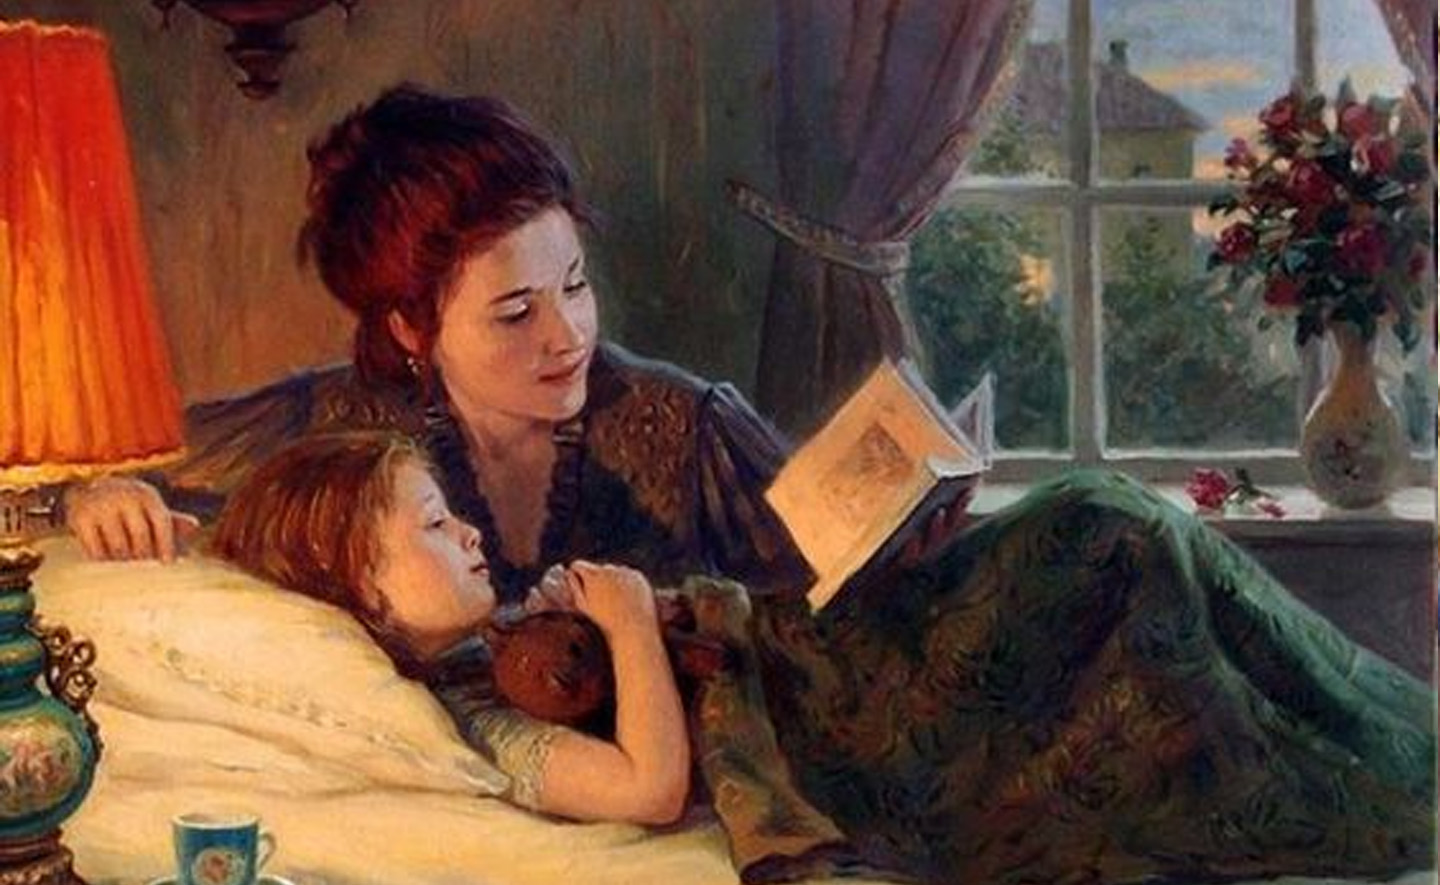 Nghiên cứu cho thấy hầu hết các bậc cha mẹ muốn có thêm thời gian đọc sách cho trẻ nhỏ